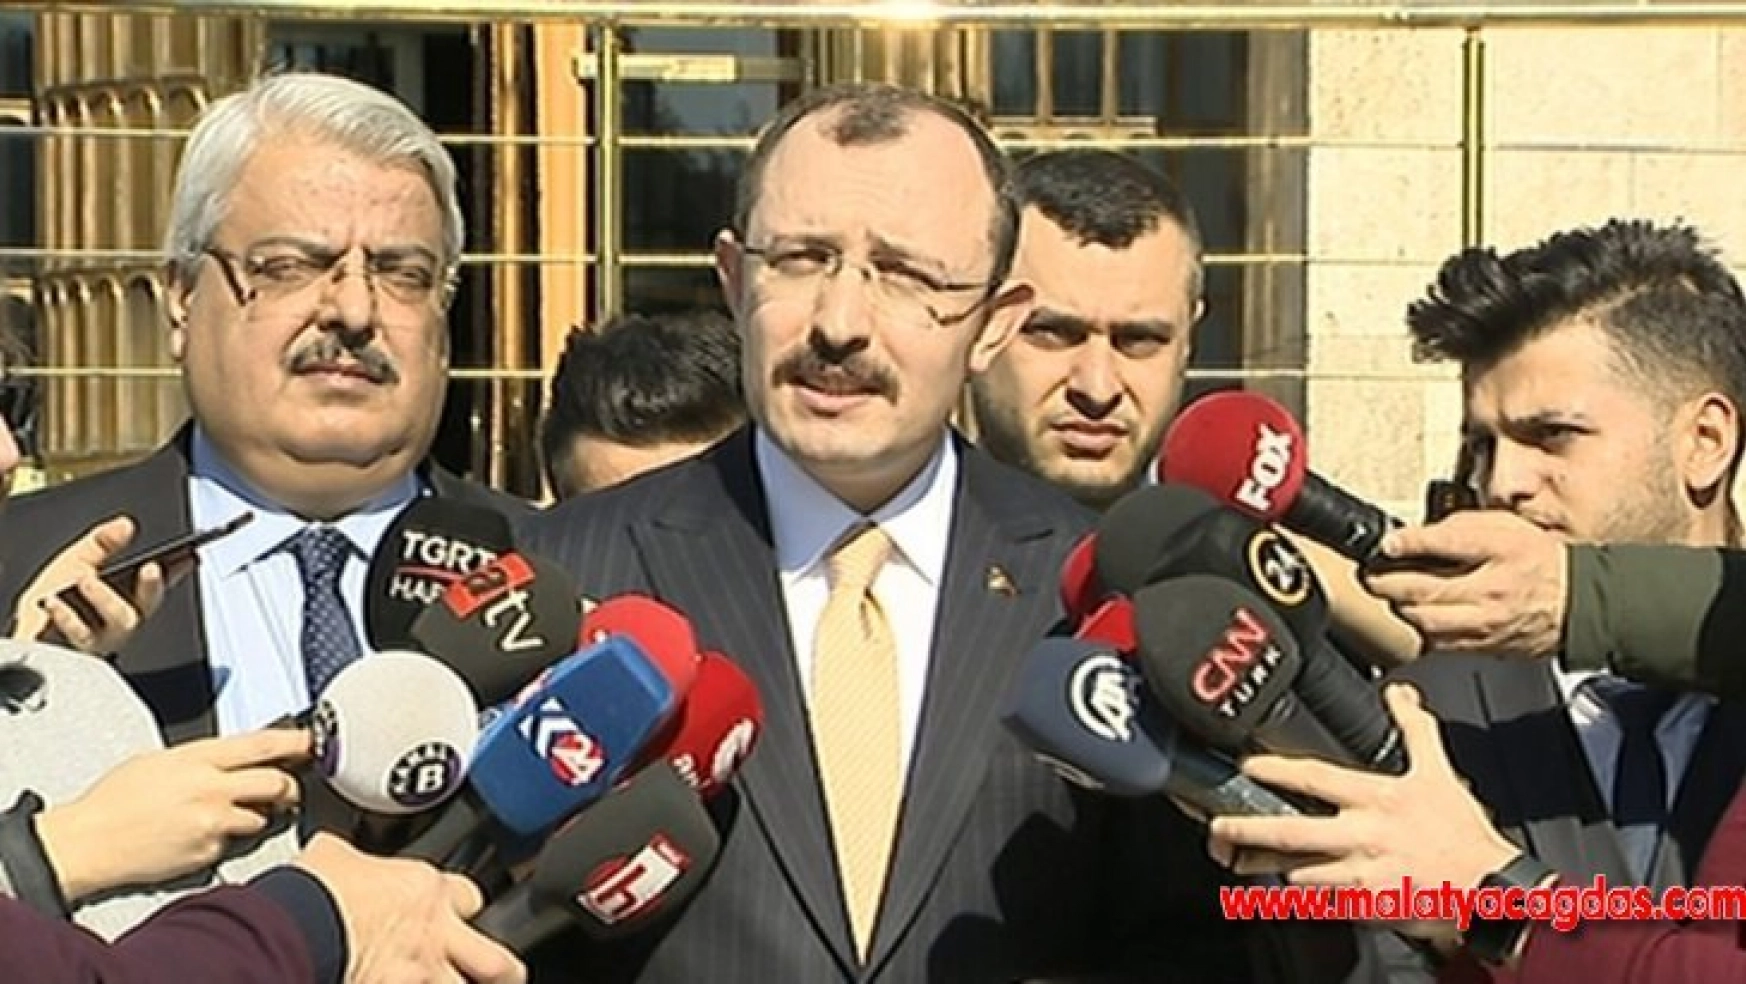 AK Parti Grup Başkanvekili Mehmet Muş: